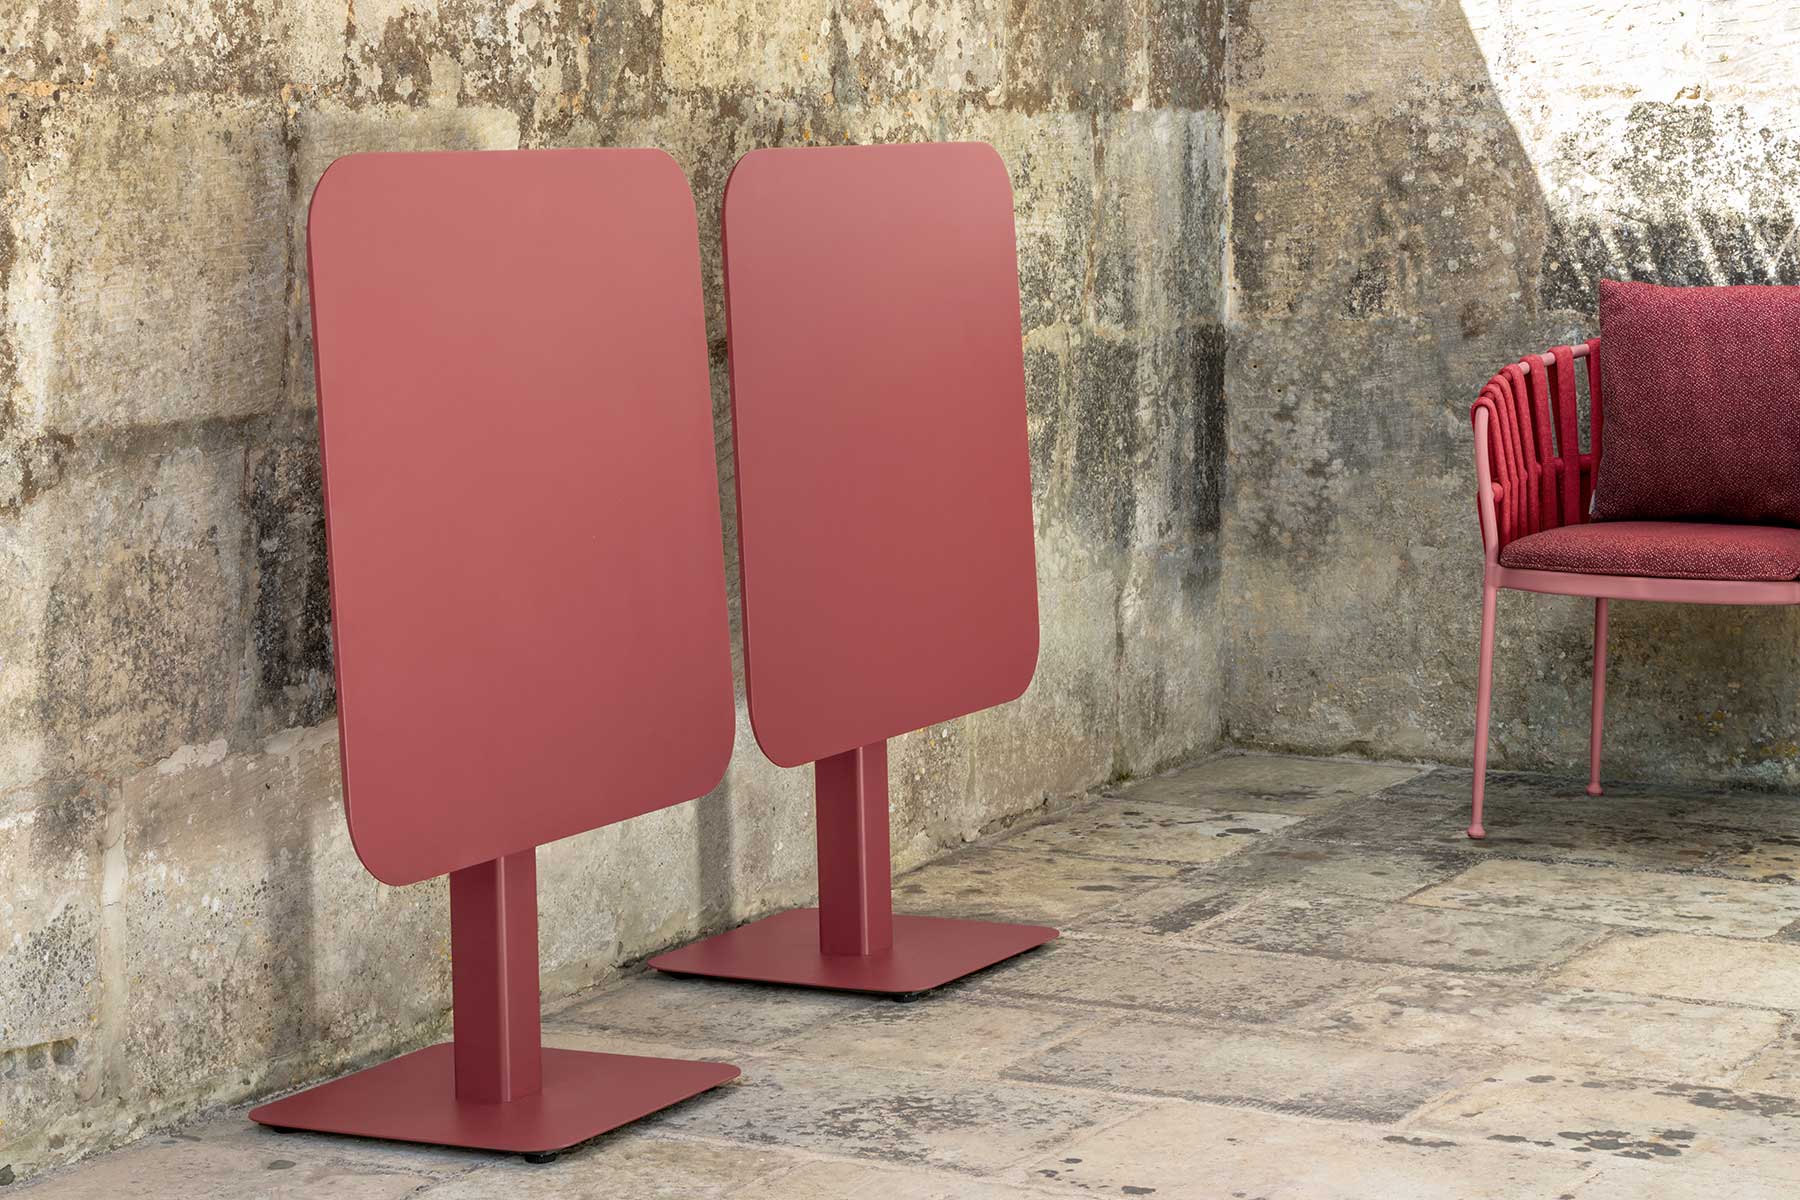 Vente en ligne de meubles de jardin luxueux et de haute qualité. Fabric est une table de jardin pliante rouge, pratique et solide. 80 x 80 cm. Livraison.